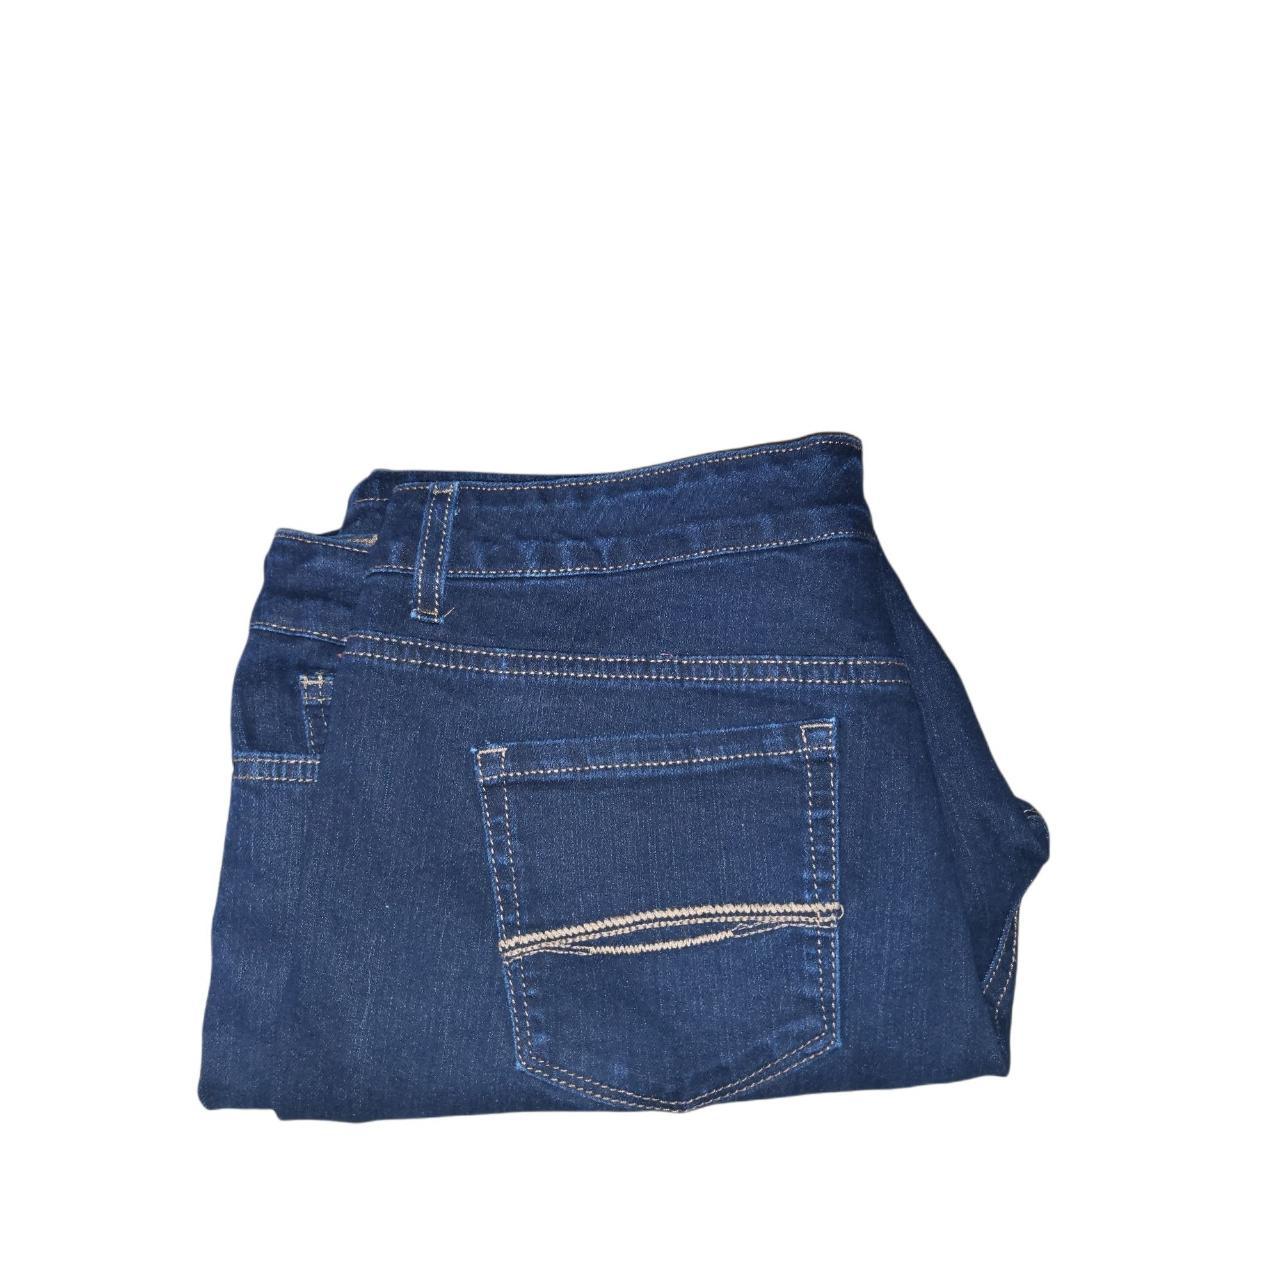 Bandolino Jeans Women Sz 16 P Mandie Blue Denim... - Depop